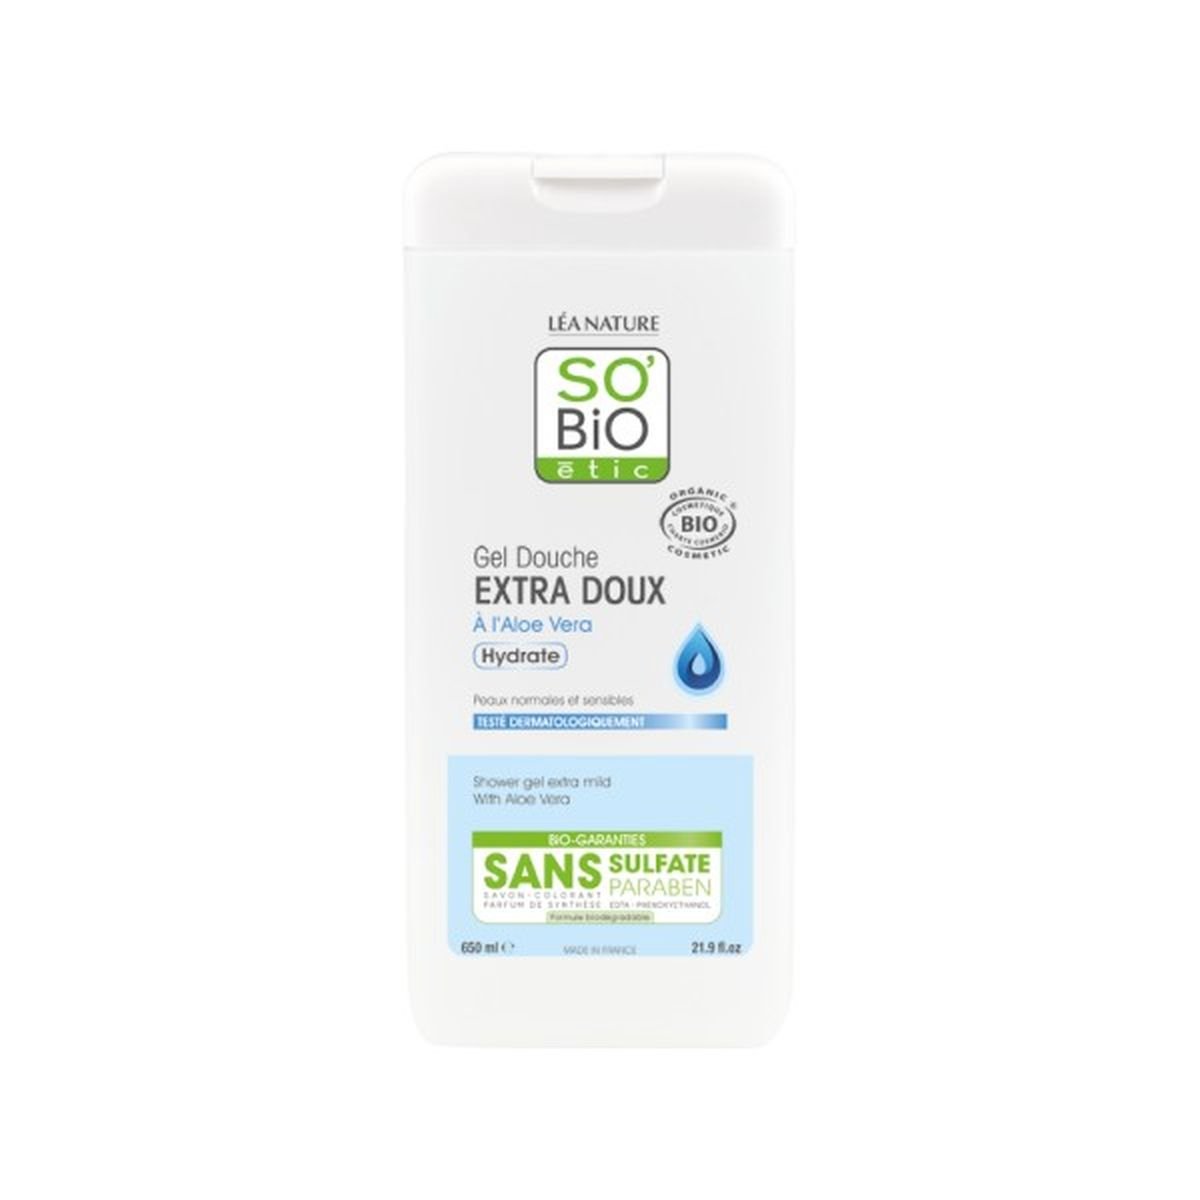 So Bio etic ultra delikatny żel pod prysznic Bio Aloes bez sulfate, 650 ml